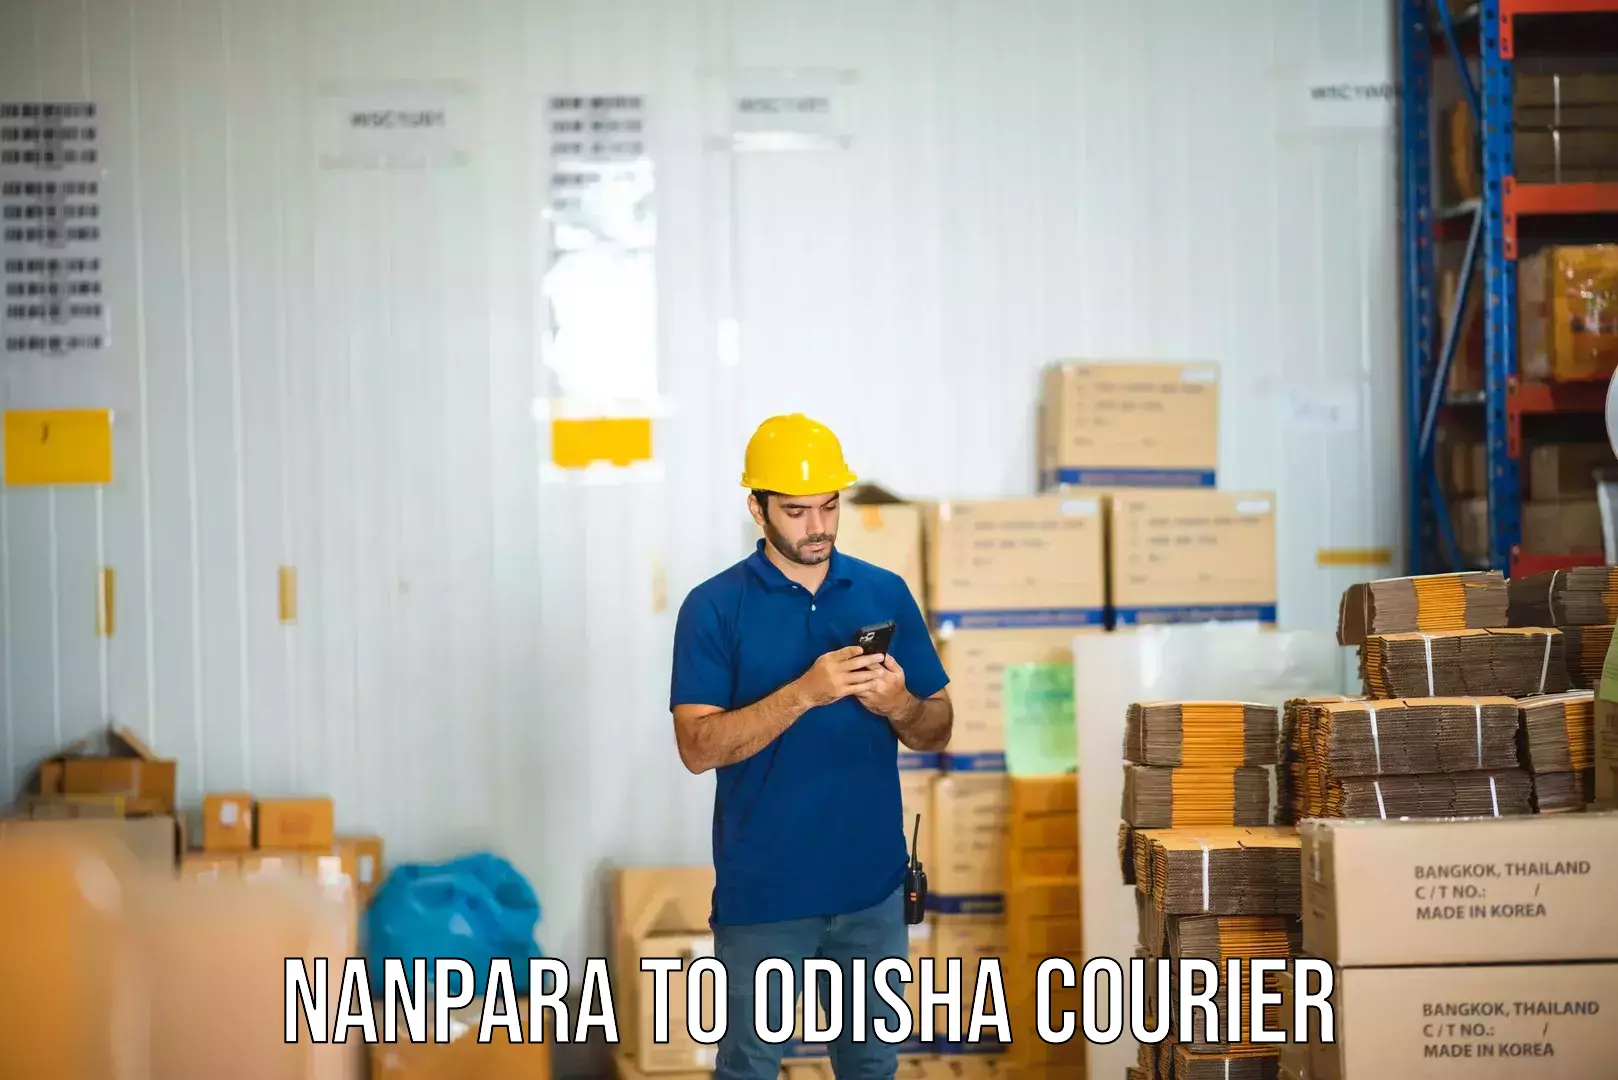 Courier app Nanpara to Morada